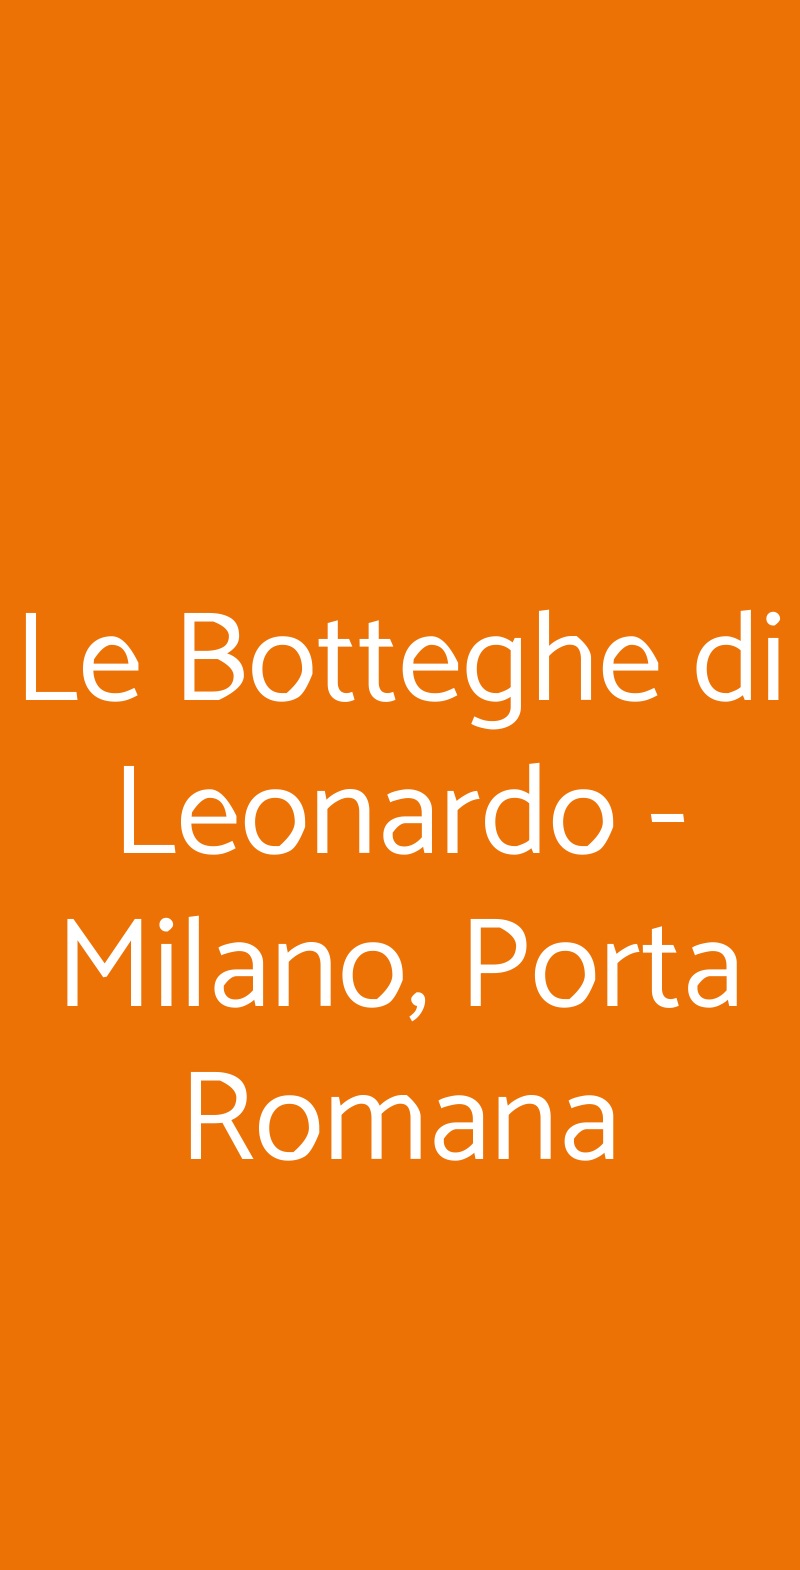 Le Botteghe di Leonardo - Milano, Porta Romana Milano menù 1 pagina